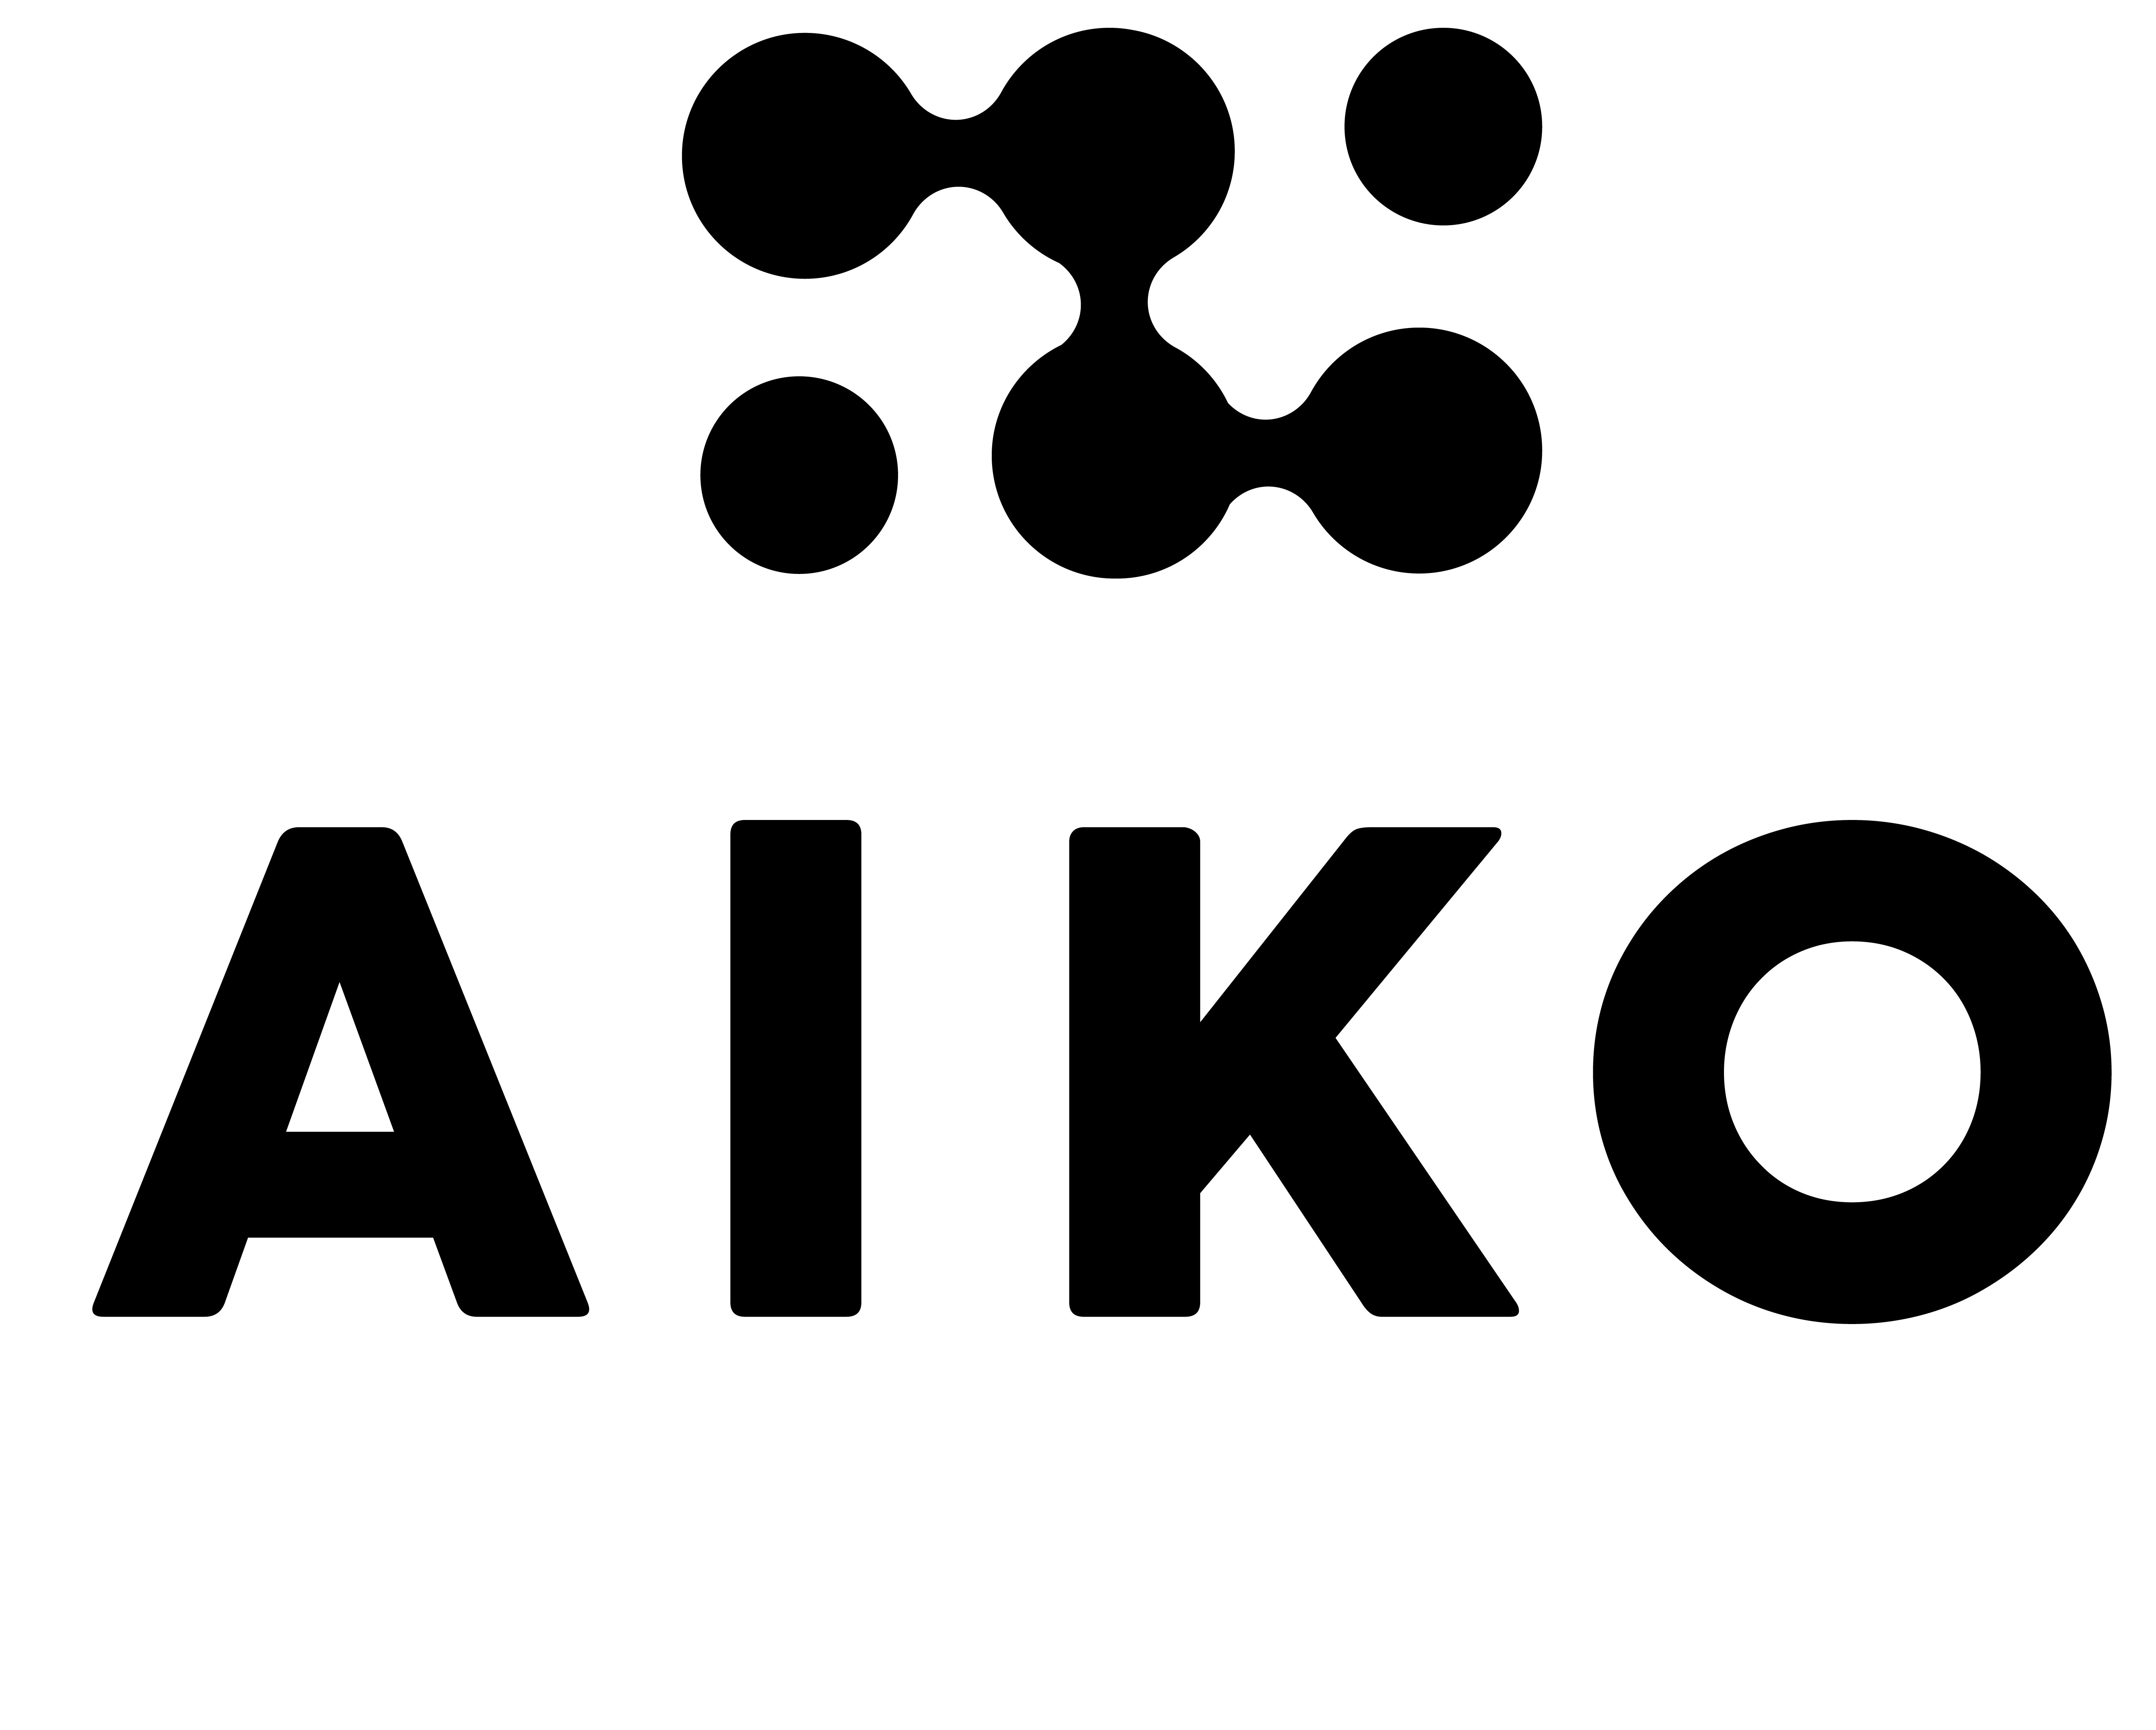 Trademark Logo AIKO